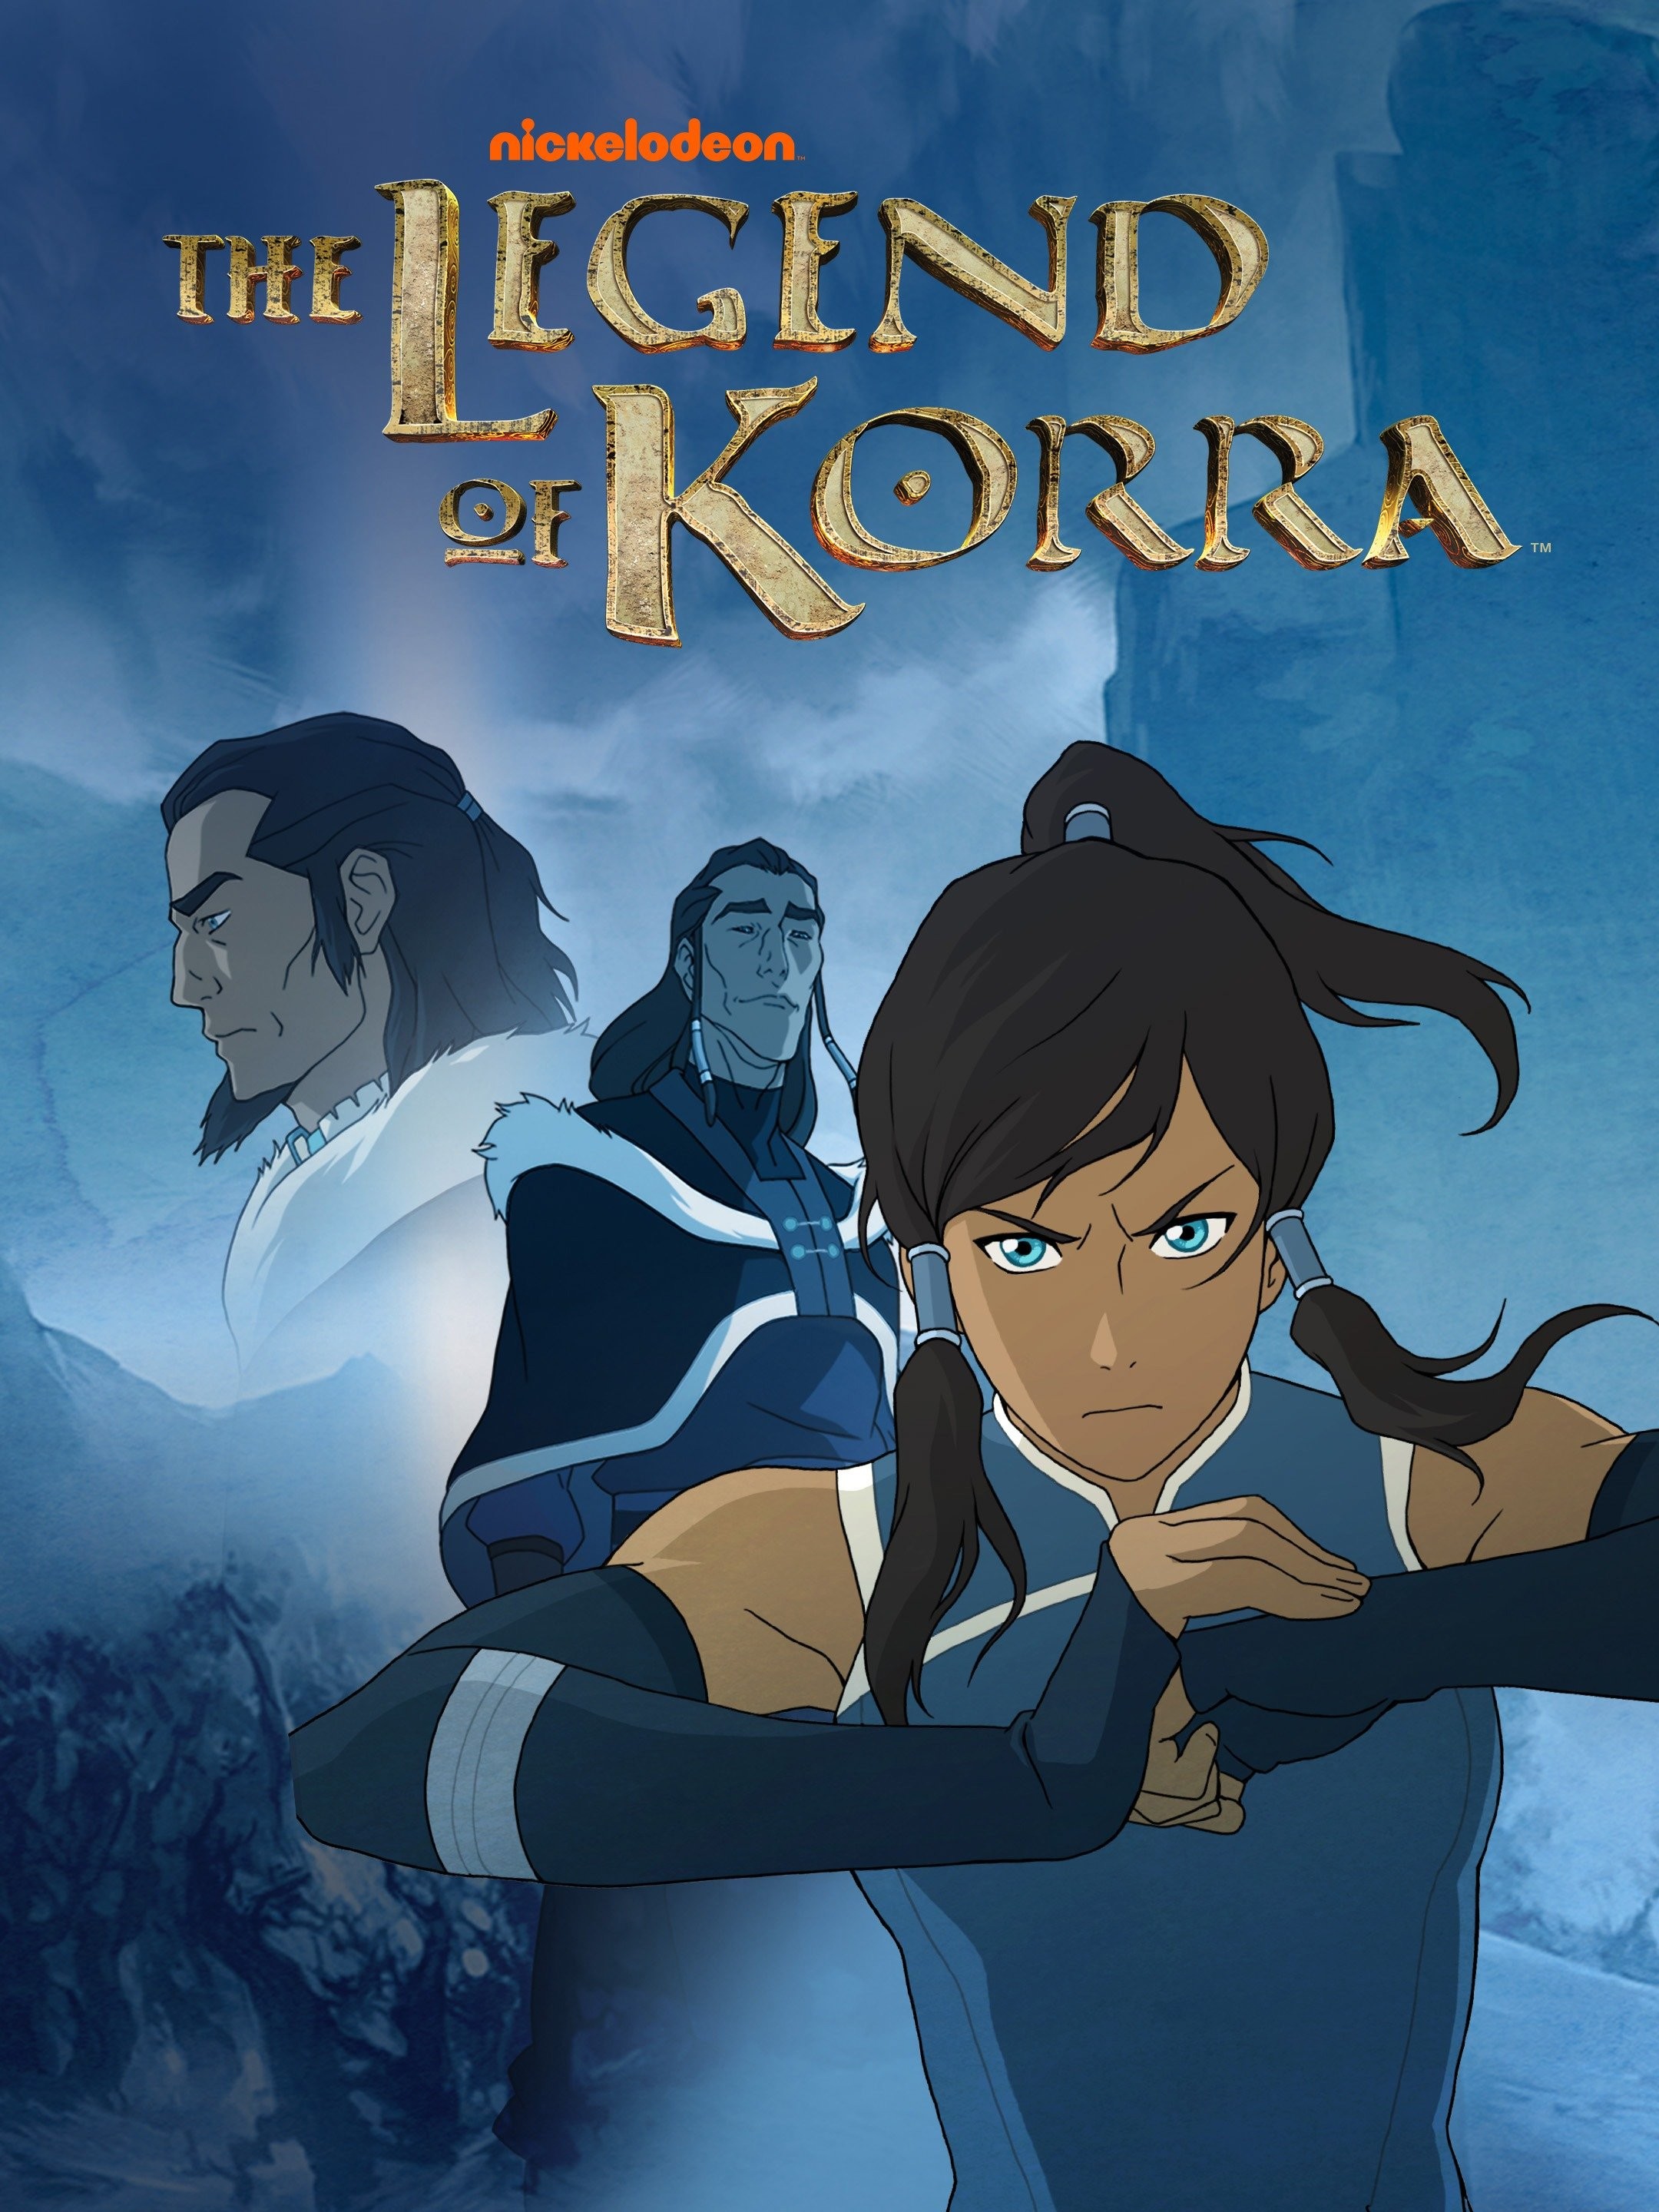 The Legend of Korra (season 2) - Wikipedia